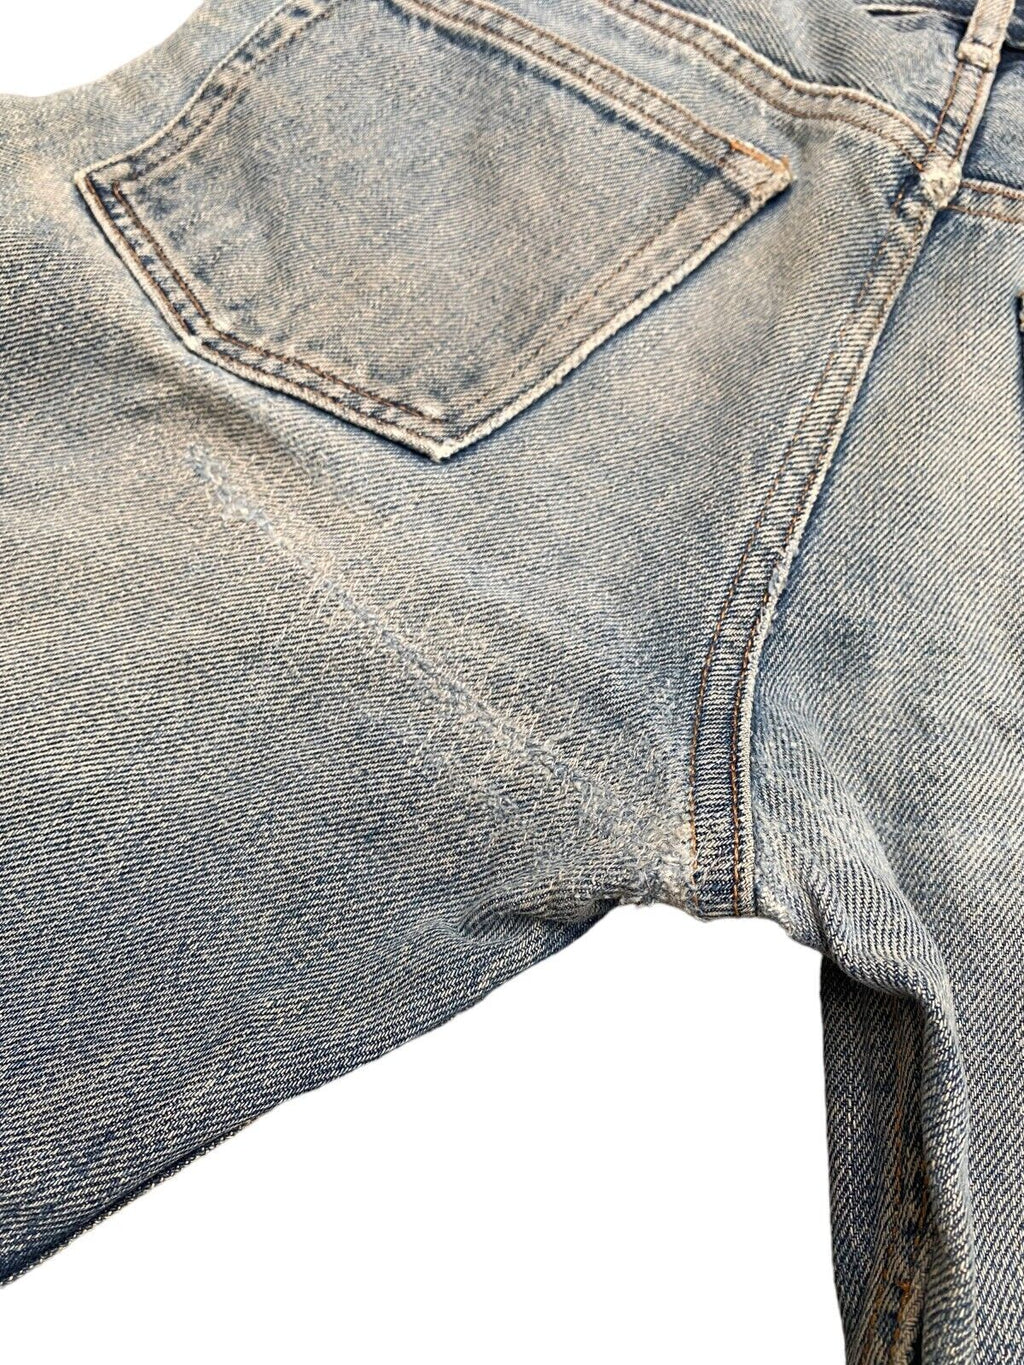 Destroyed New Standard  Denim Jeans